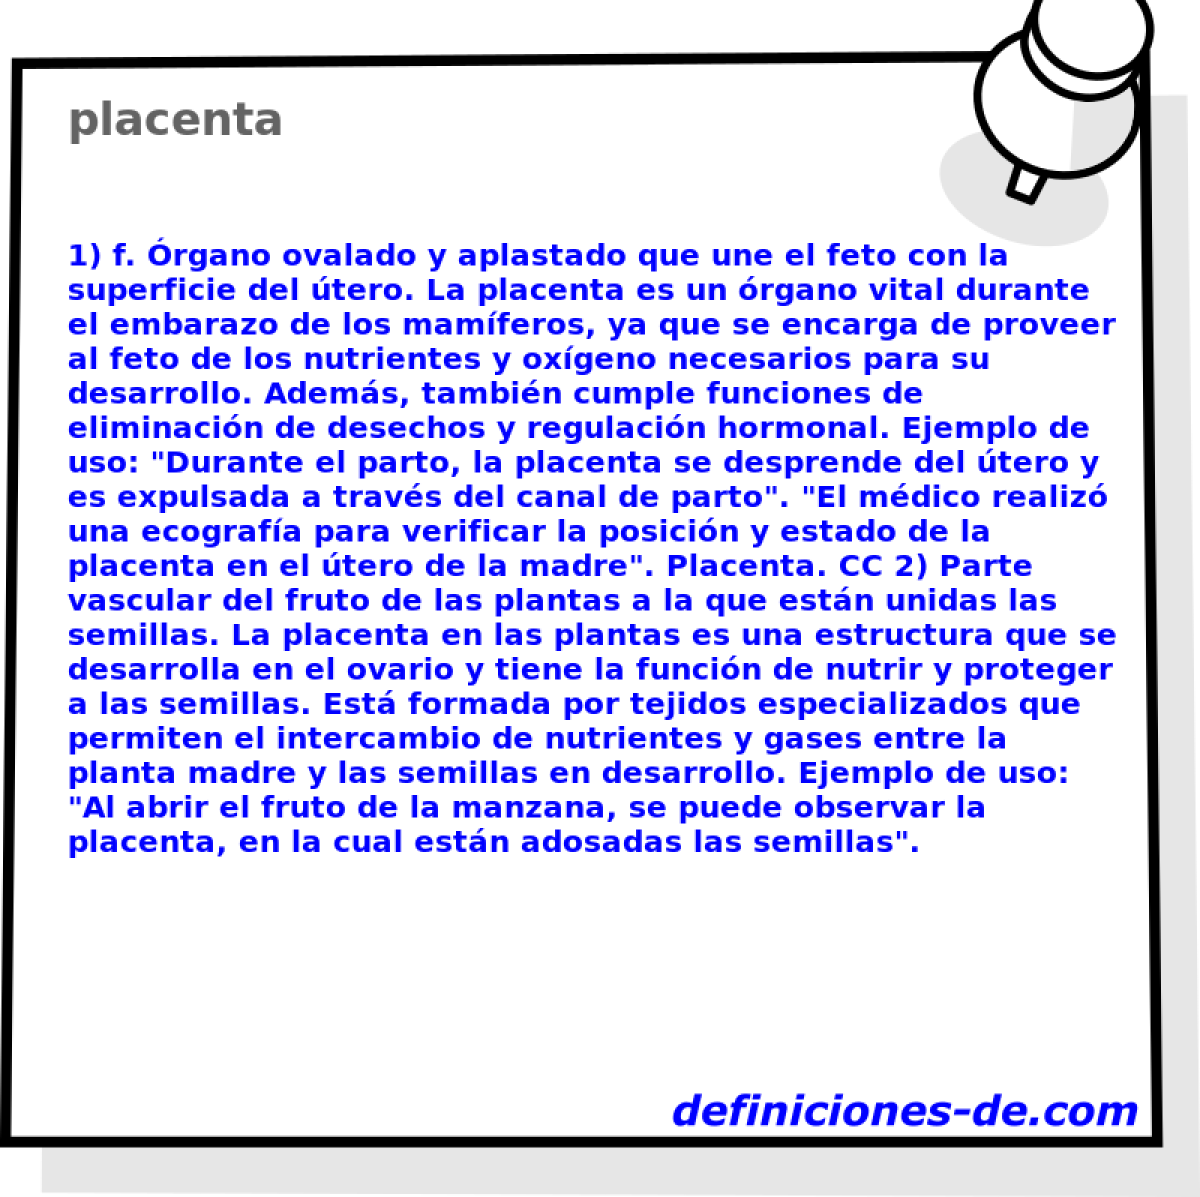 placenta 